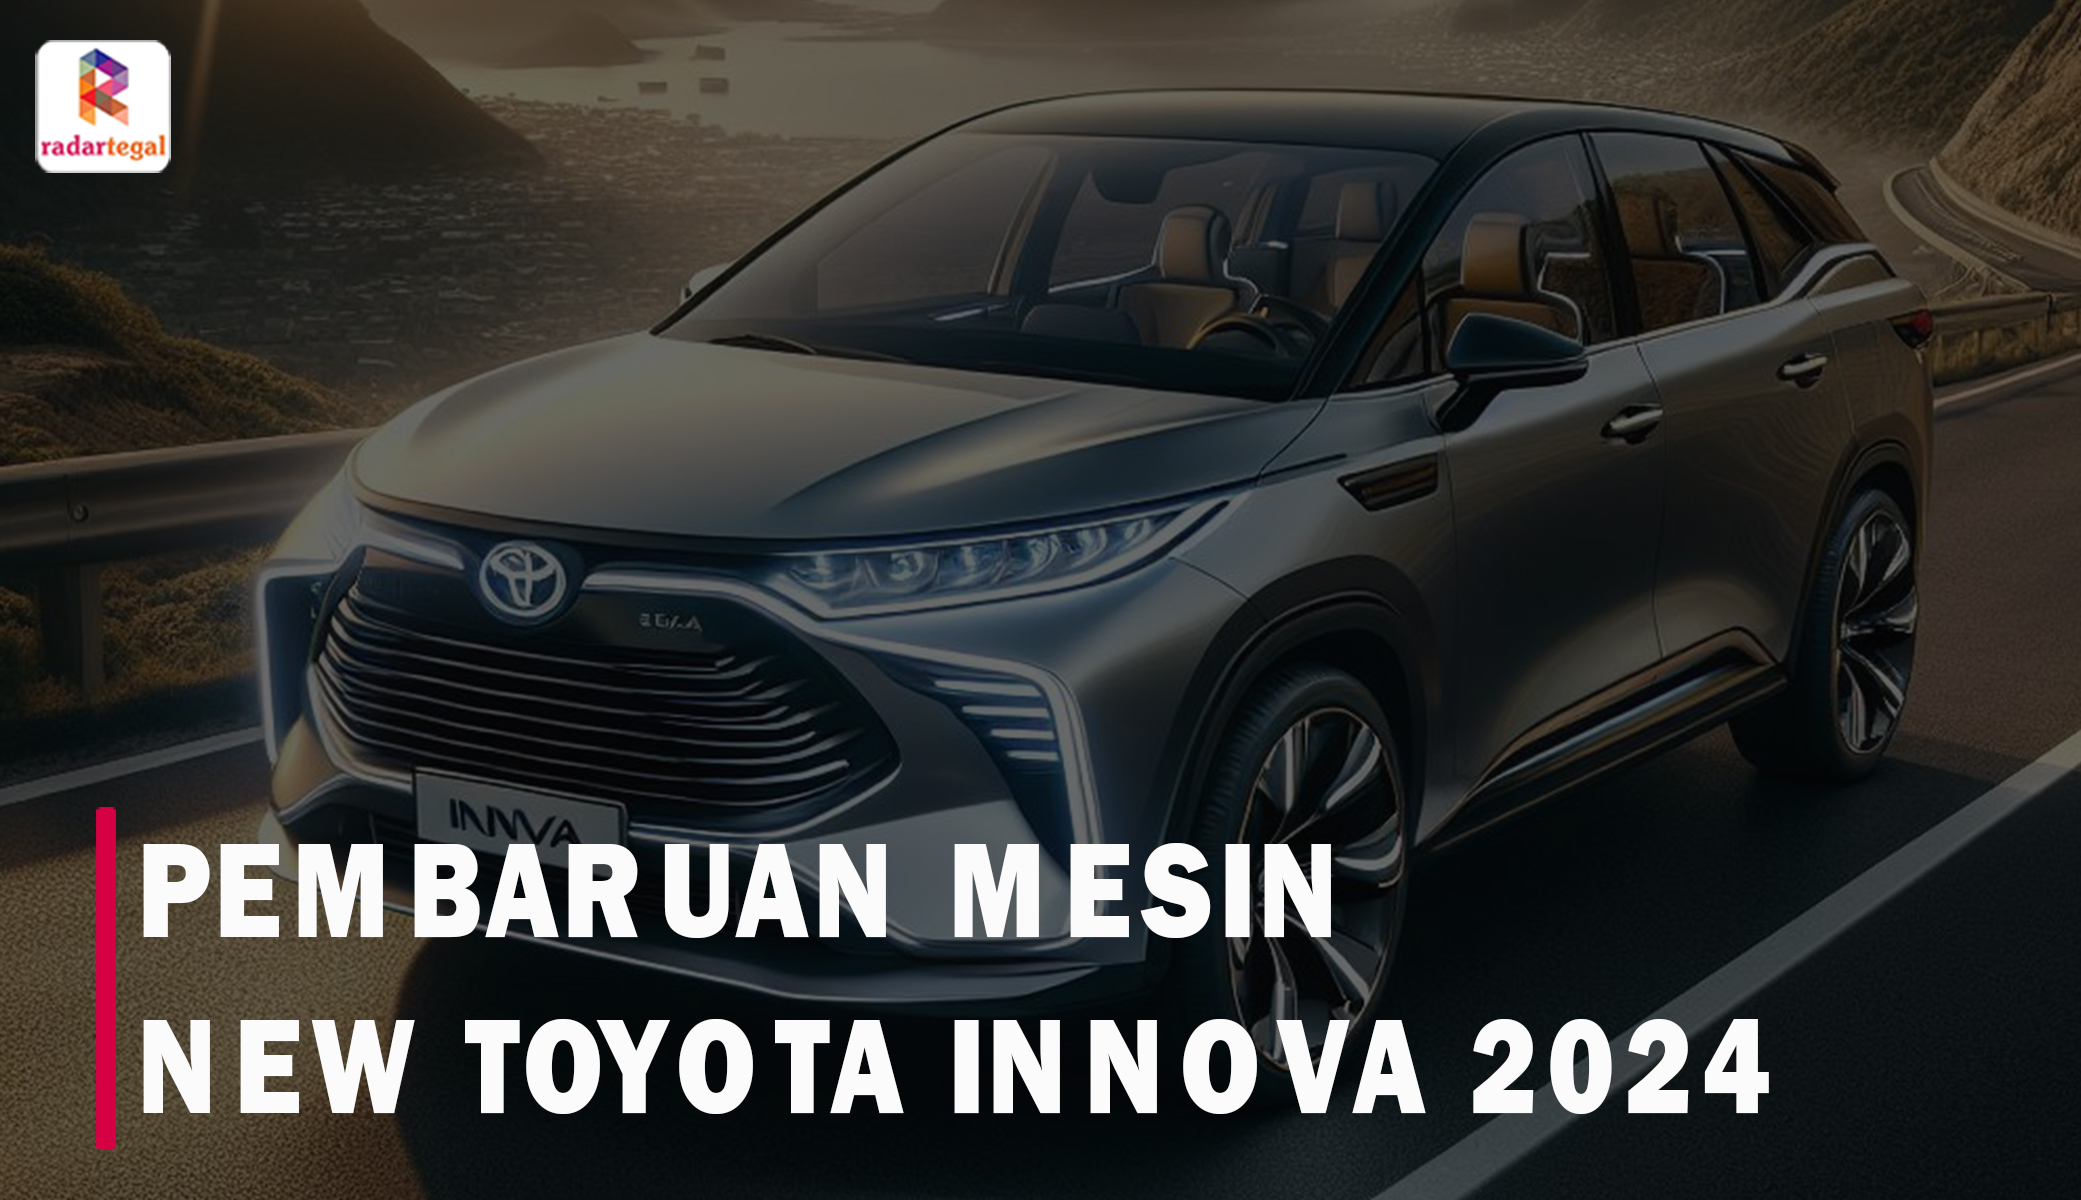 Pembaruan Mesin New Toyota Innova 2024 Janjikan Pacuan Lebih Kencang, Membuatnya Tak Tertandingi